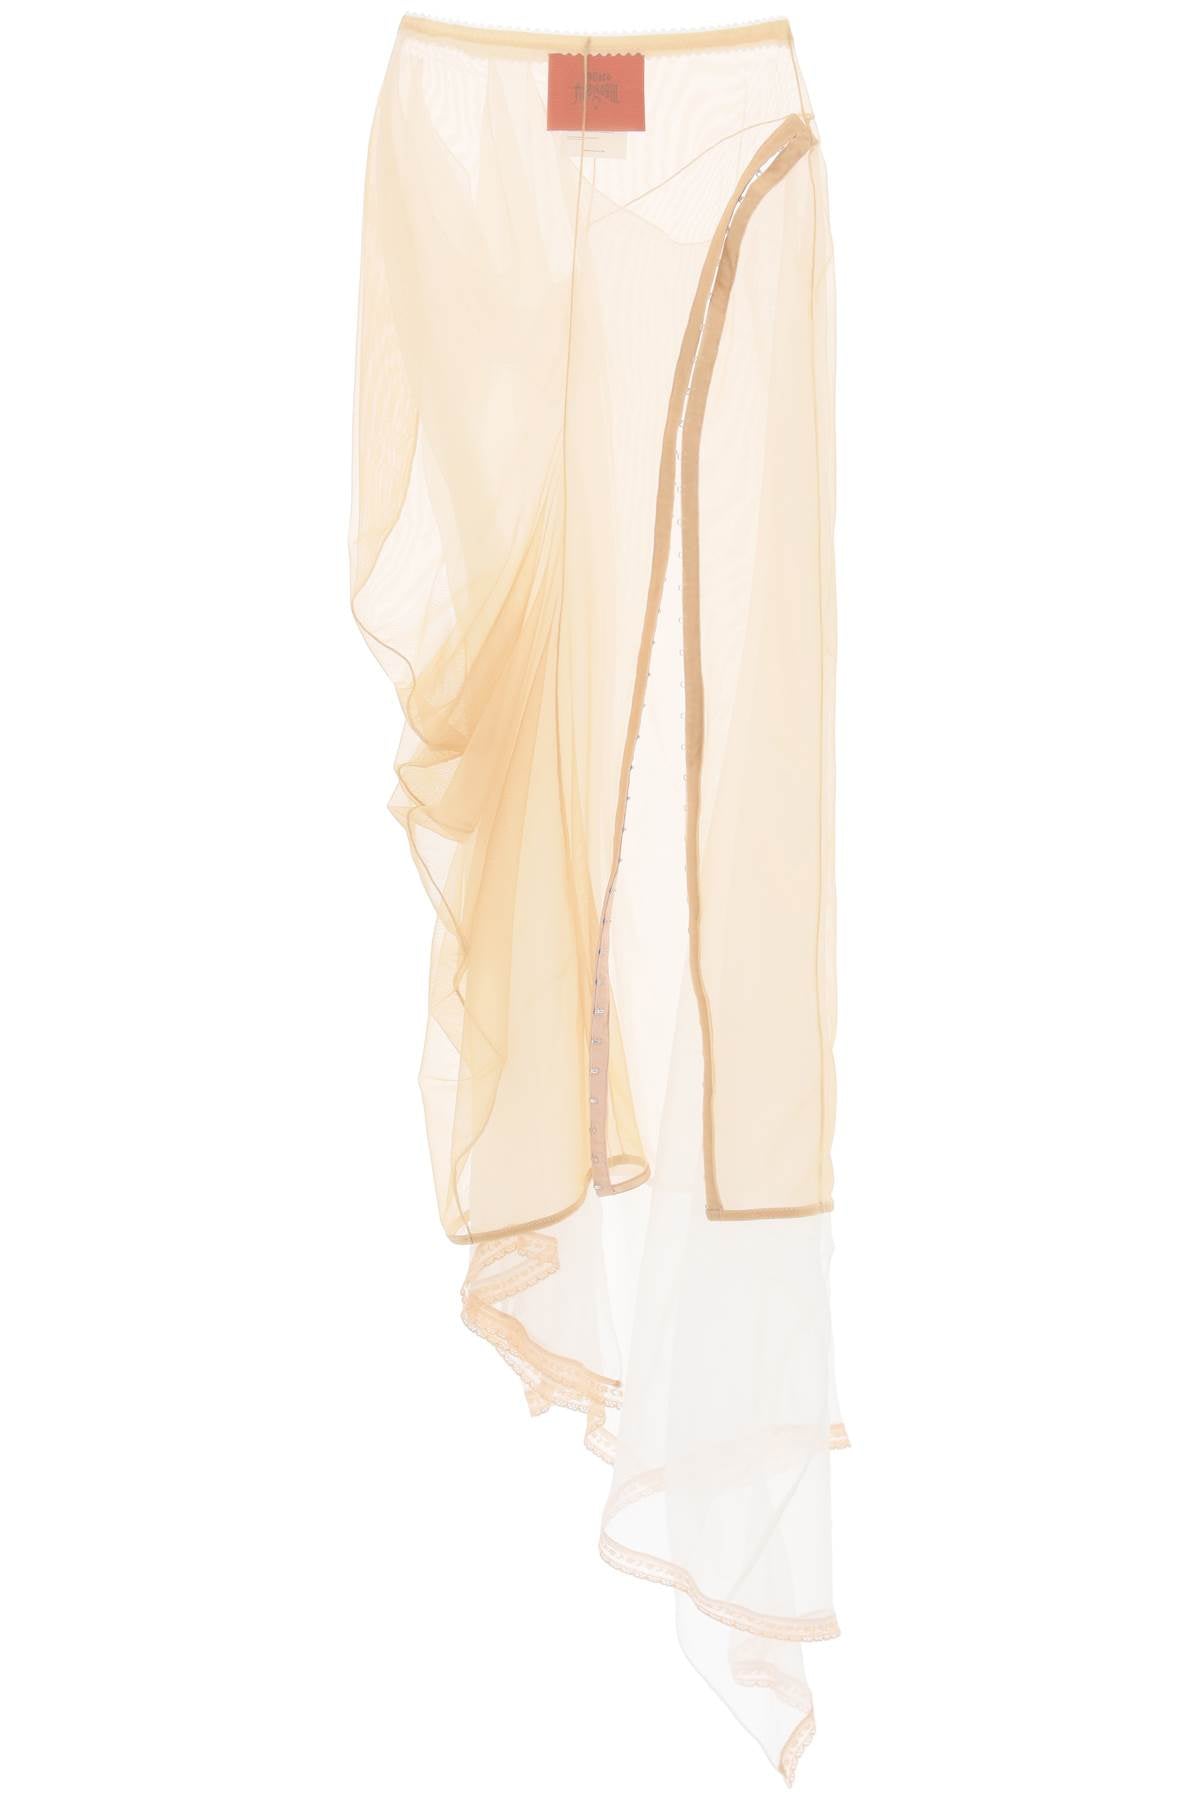 DILARA FINDIKOGLU Sheer Beauty: Maxi Skirt for Women in Mixed Colors